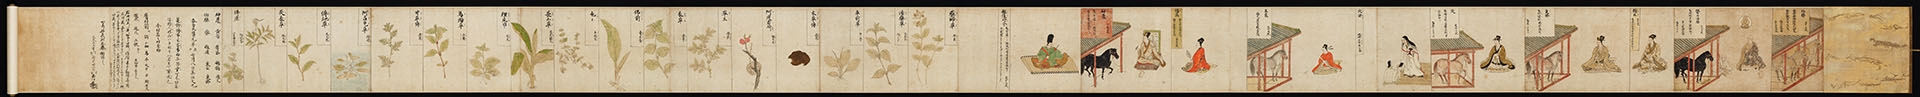 日本镰仓时代 马医草纸画卷纸本(东京)29×610.2